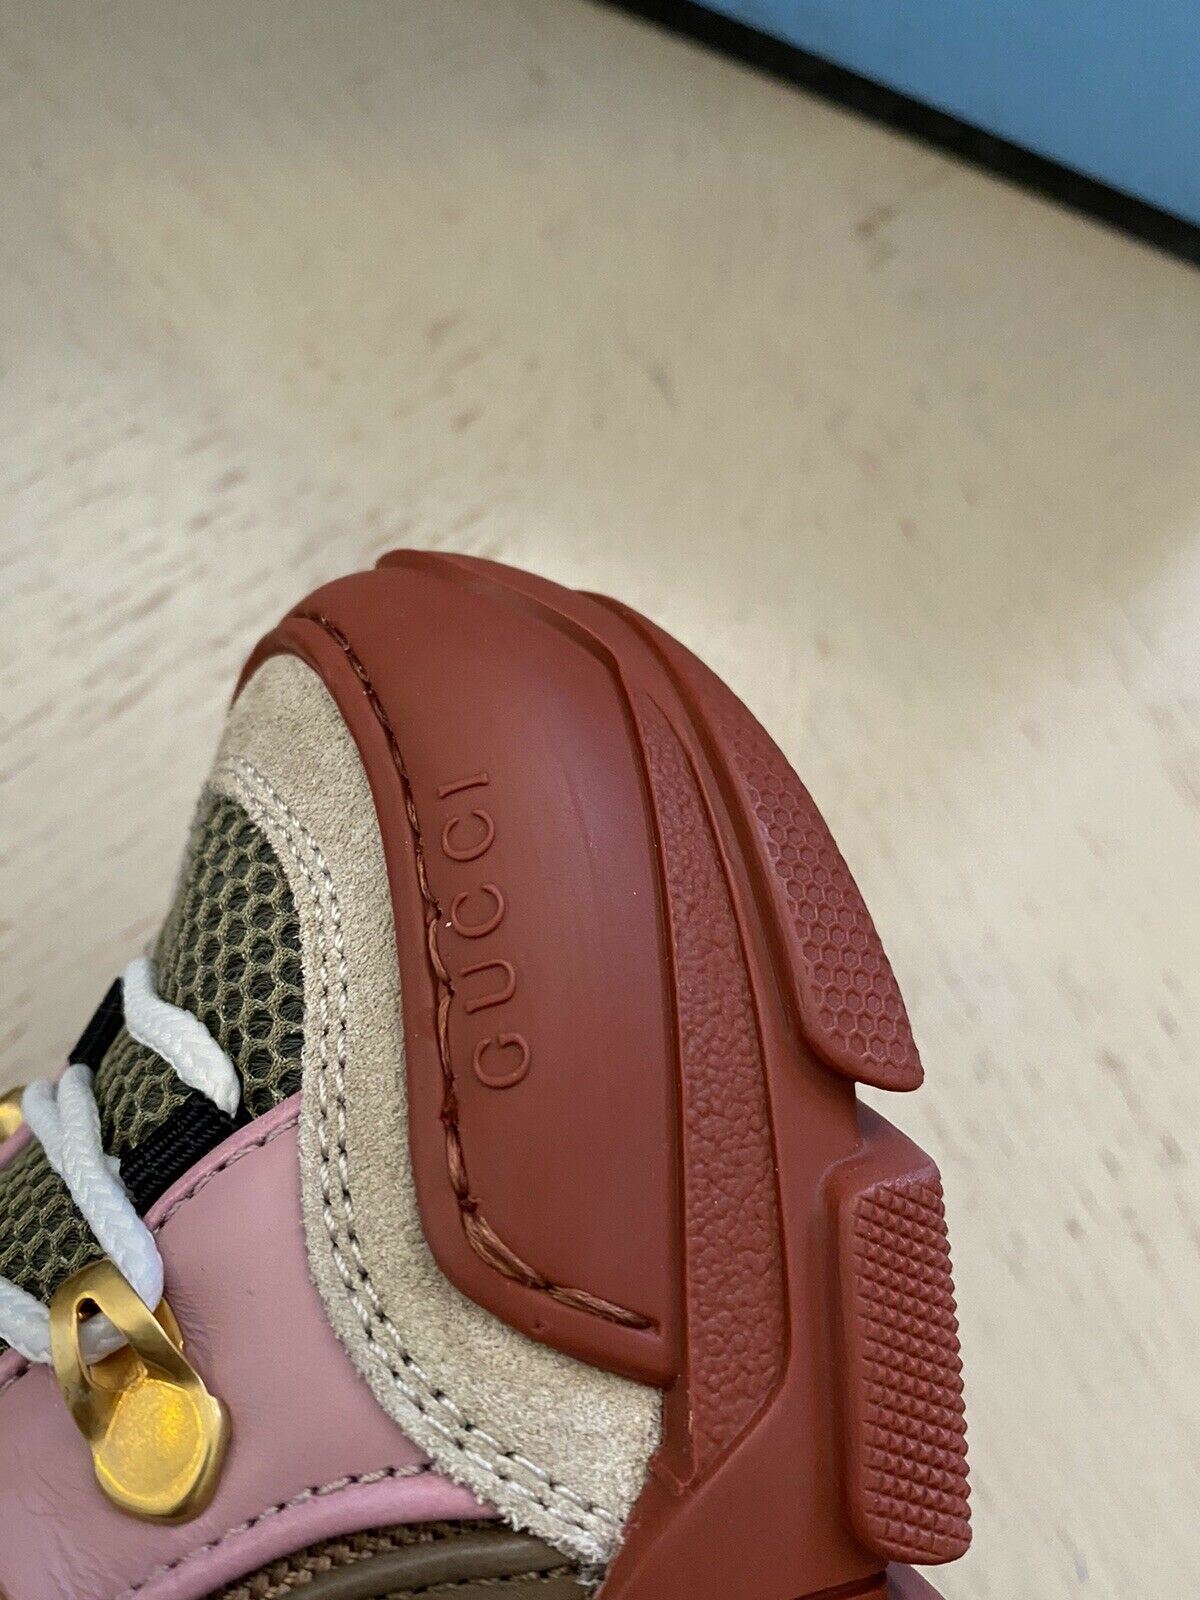 NIB $1300 Женские кроссовки Gucci Обувь в стиле милитари Зеленый/Красный/Розовый 4 США/34 ЕС